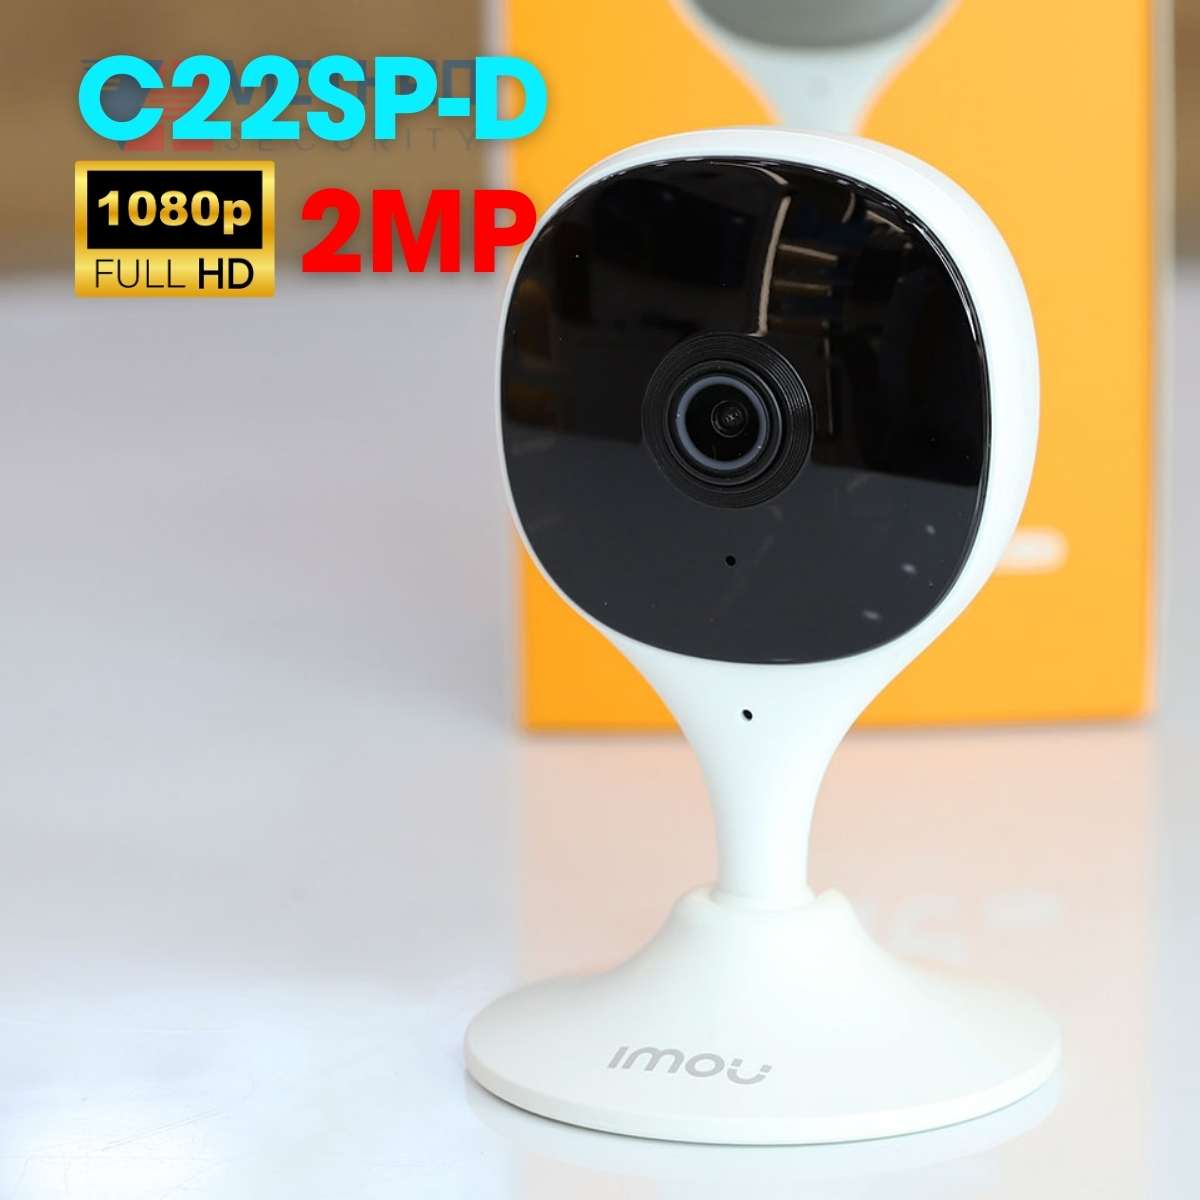 Camera wifi Imou IPC-C22SP-D 2megapixel giám sát thông minh phát hiện người AI